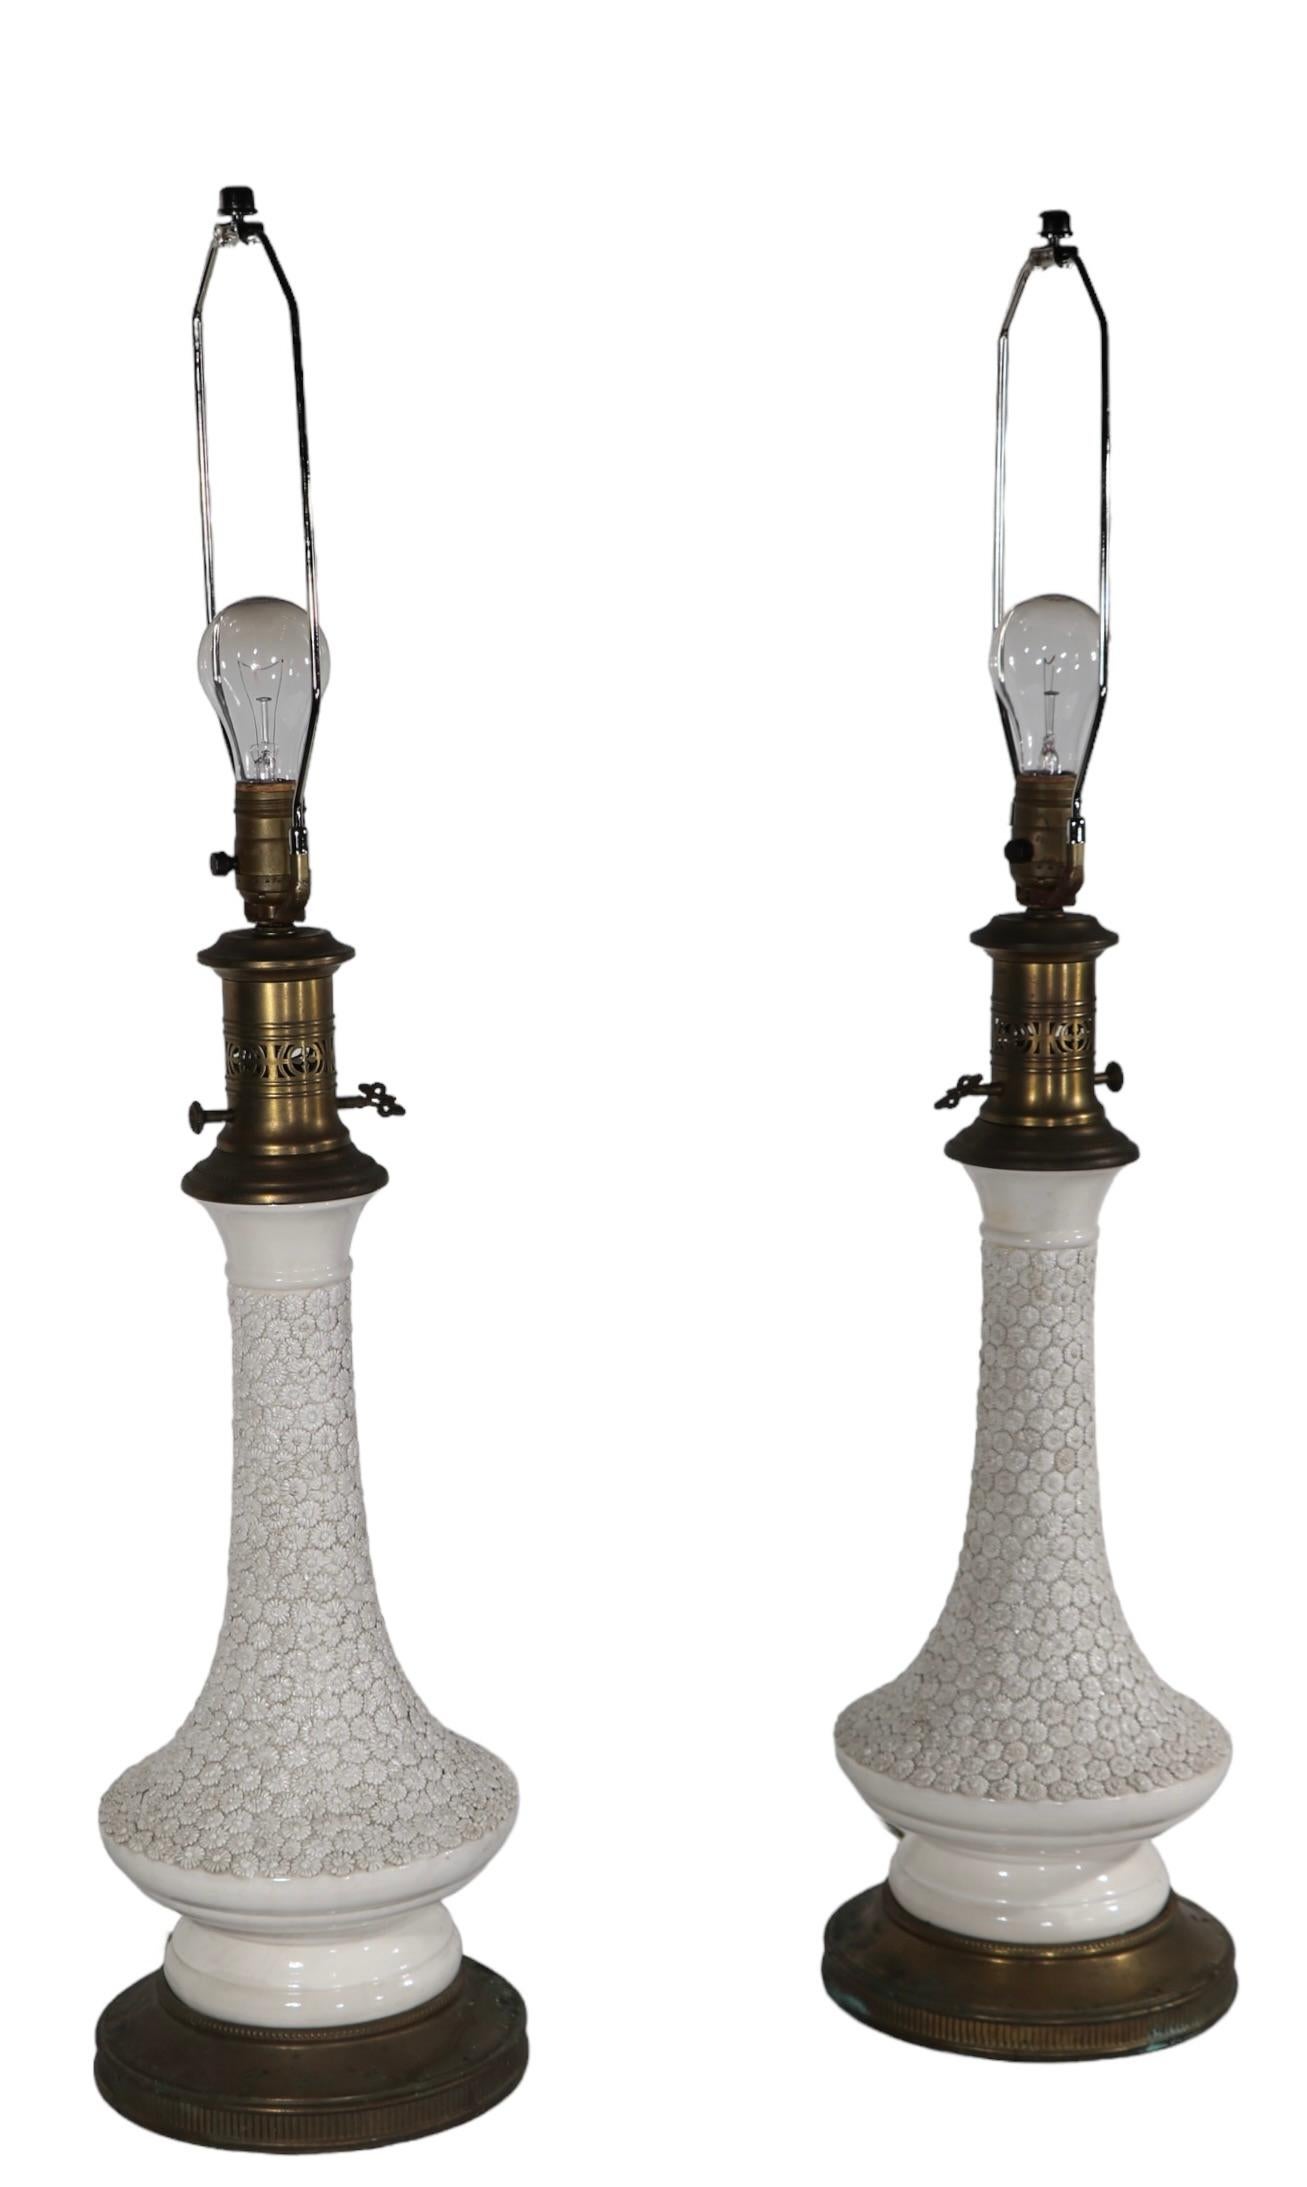 Pr. Decorative Blanc de Chine Style Table Lamps by Paul Hanson c 1960's For Sale 10